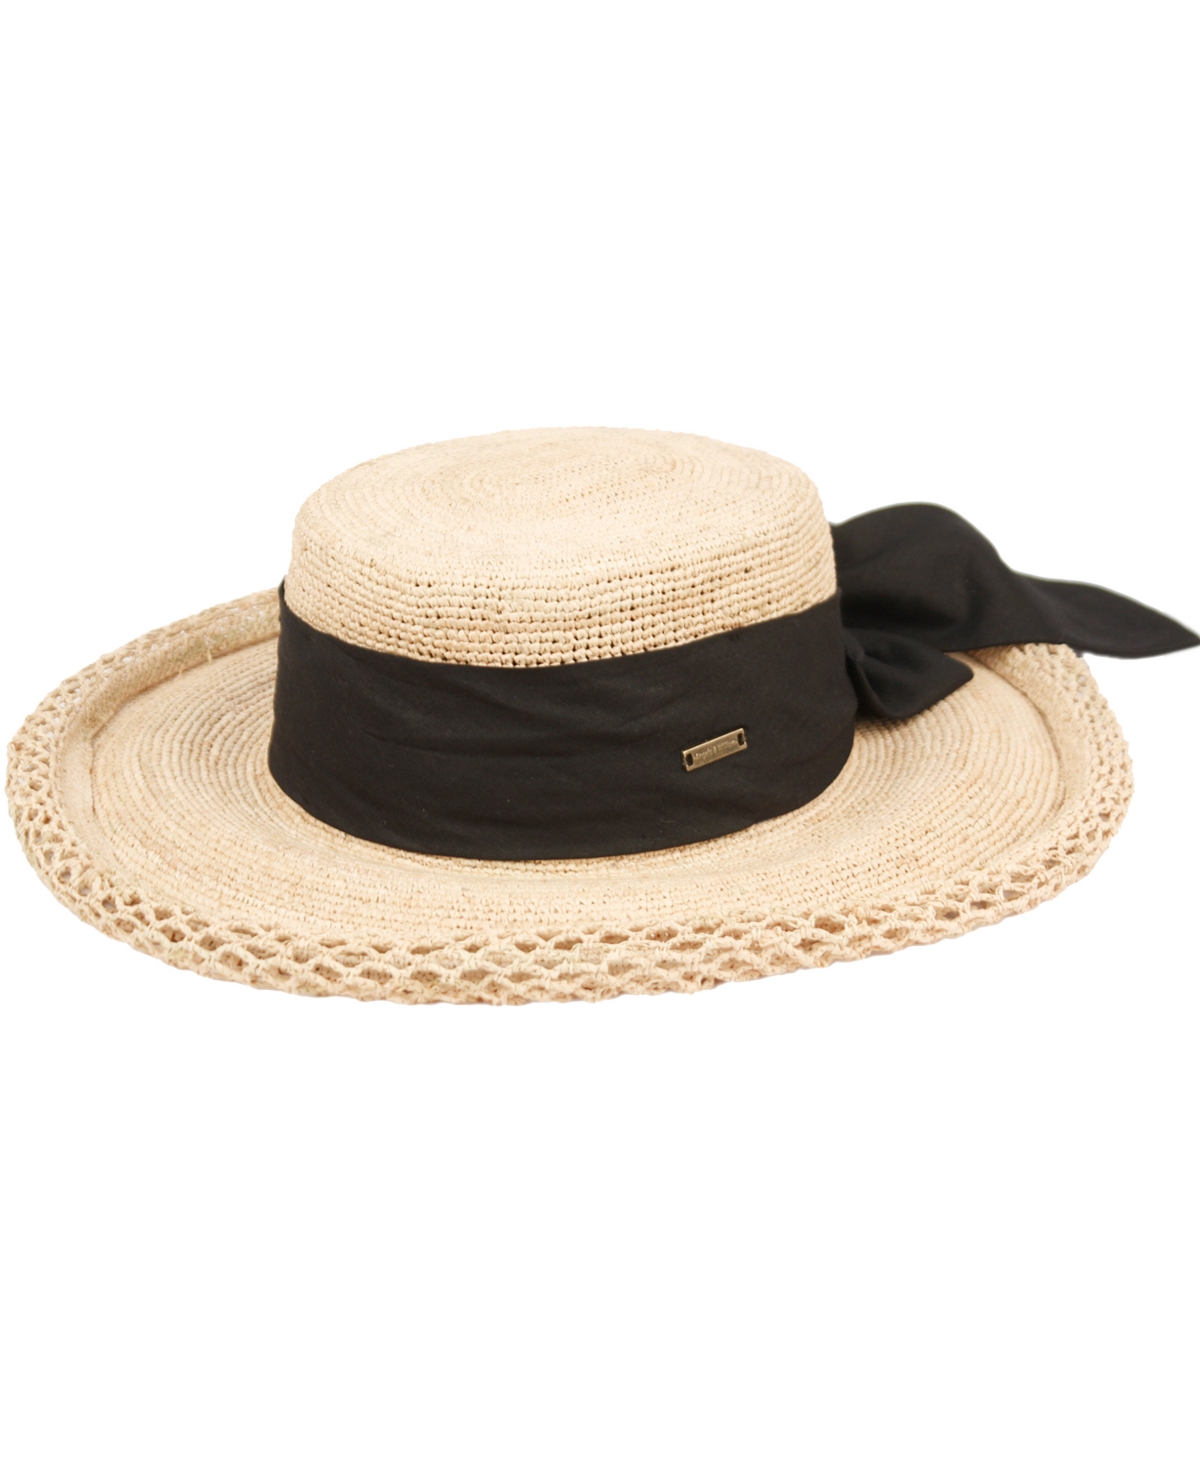 Shop Angela & William Women's Beach Sun Straw Floppy Hat In Natural